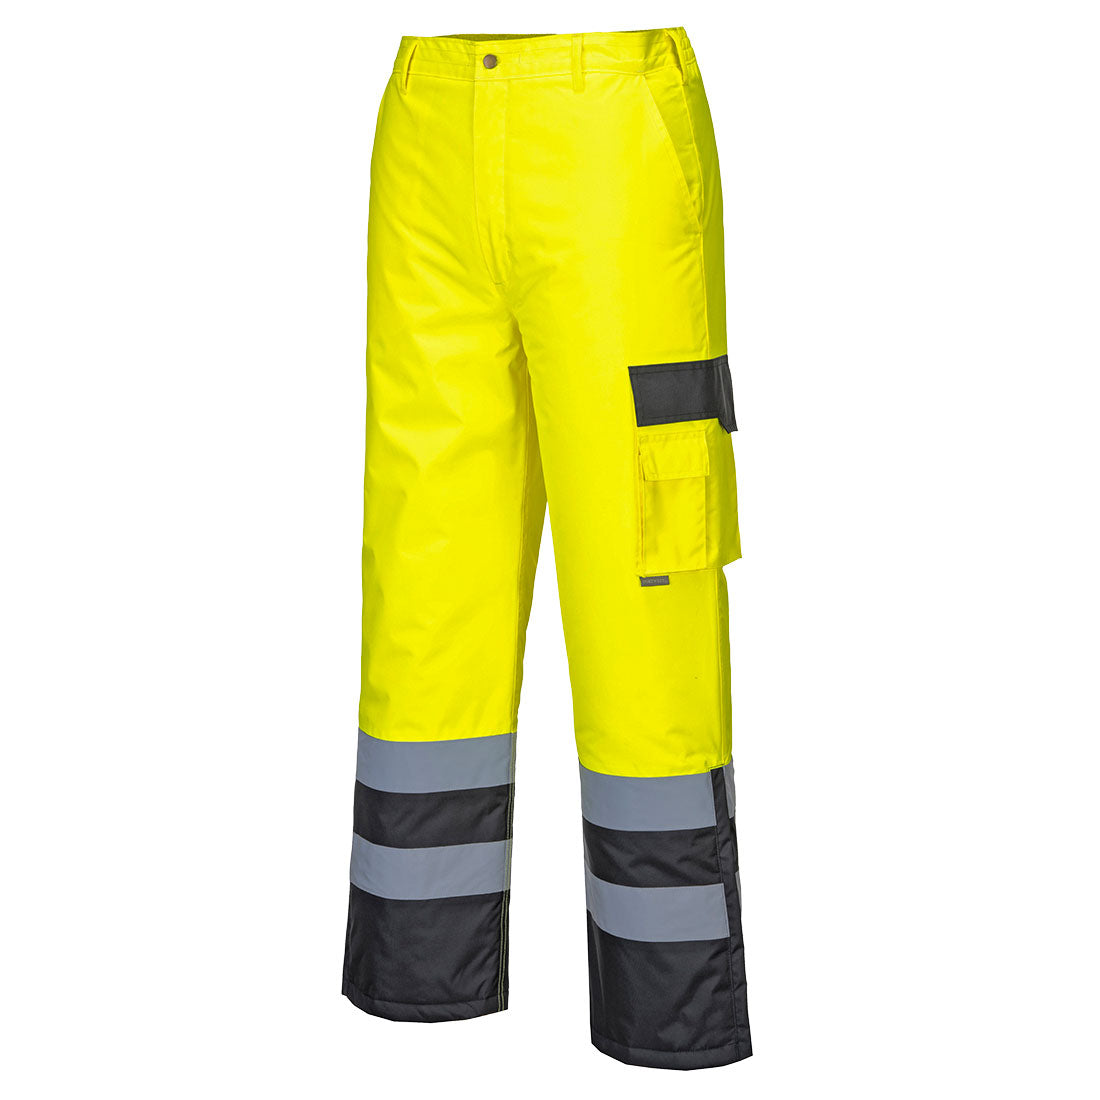 Portwest S686 Hi Vis Contrast Trousers - Lined 1#colour_yellow-black